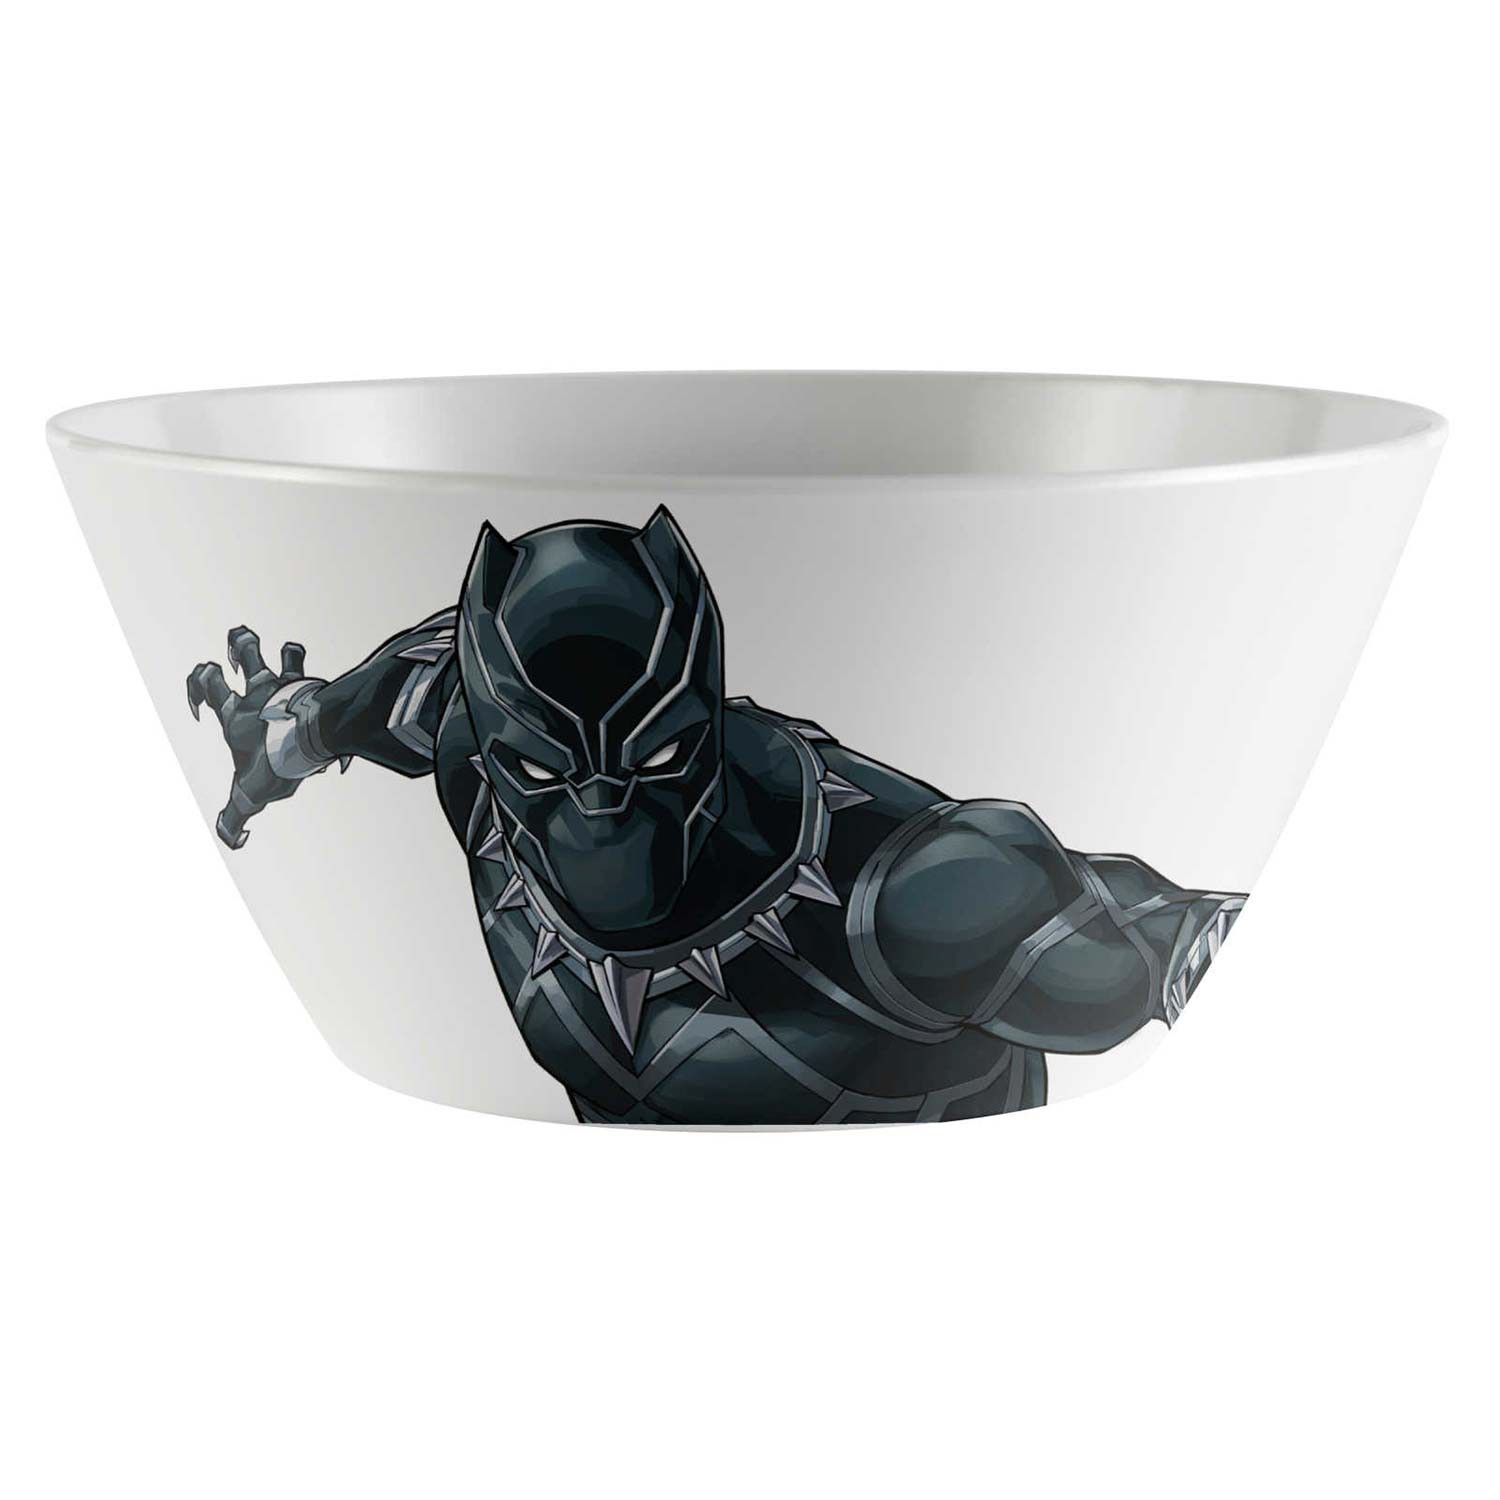 Black Panther Melamine Soup Bowl